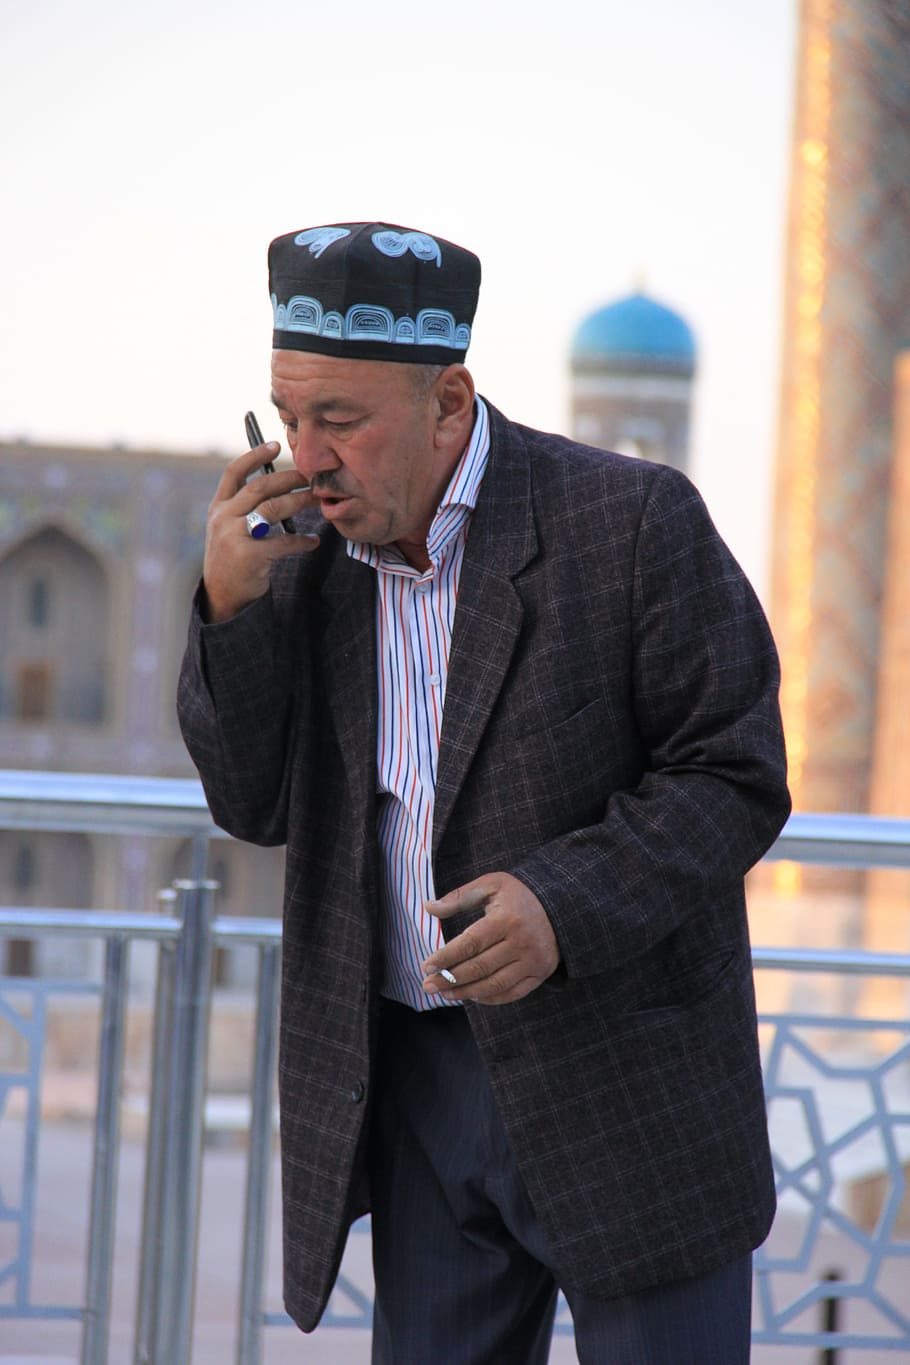 Uzbeko, Uzbekistán, Men'S, S, Hombre, Teléfono, tienda, negociación, atención, ancianos